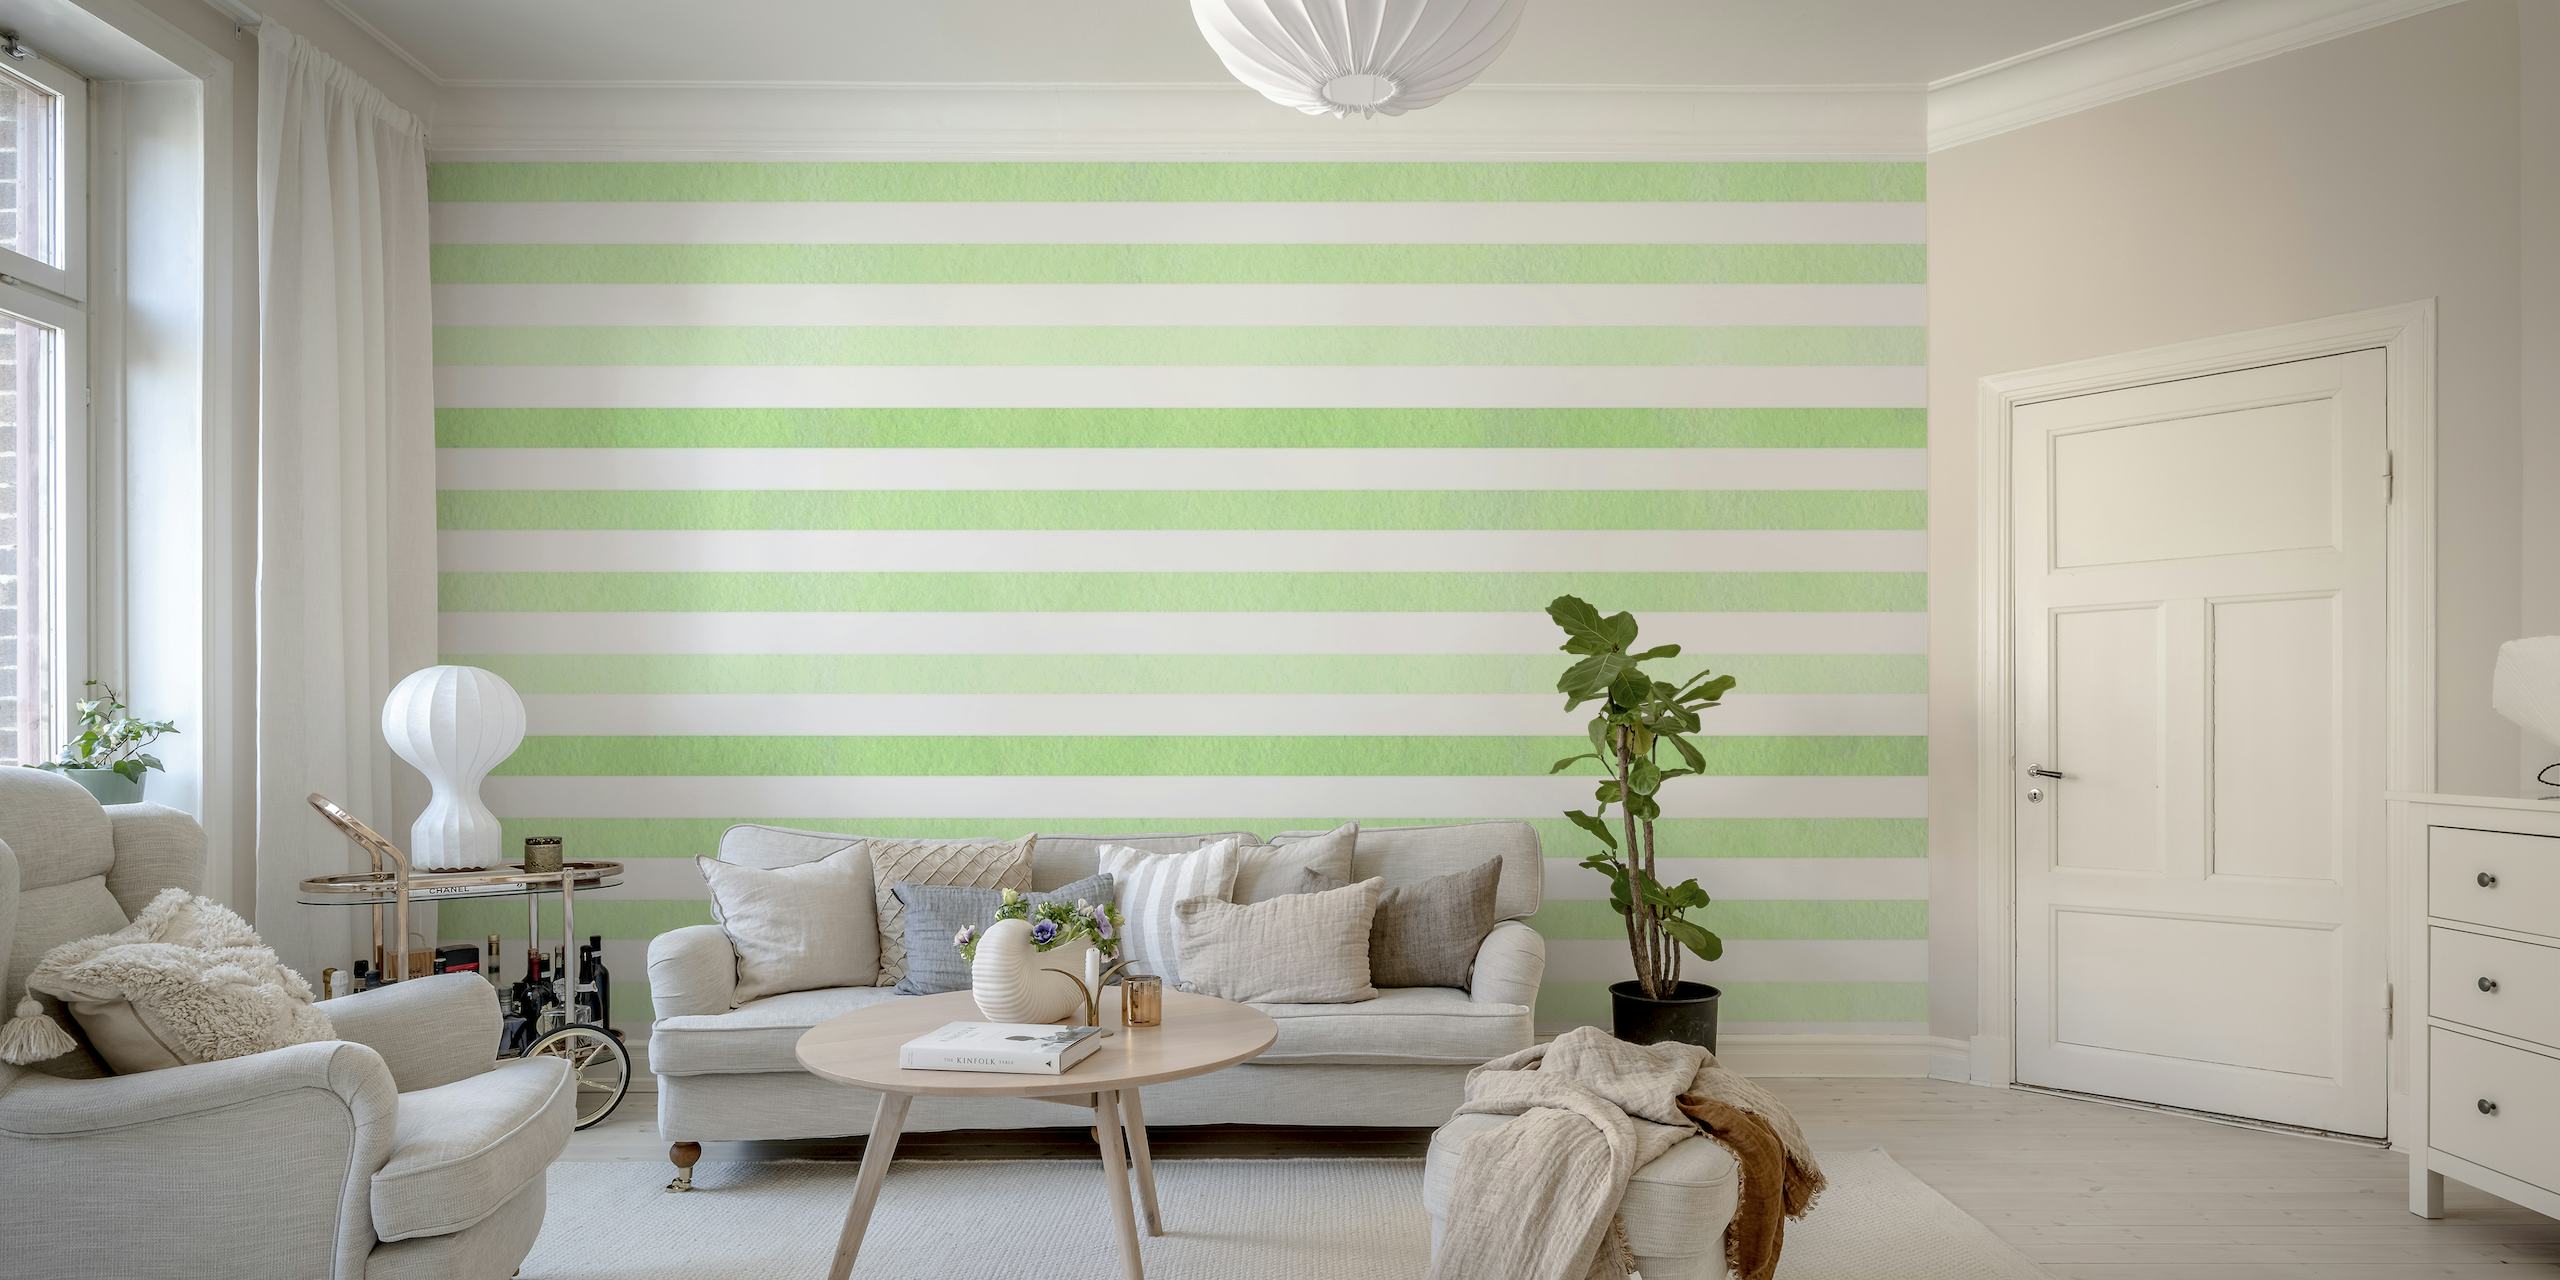 Mint green striped wallpaper